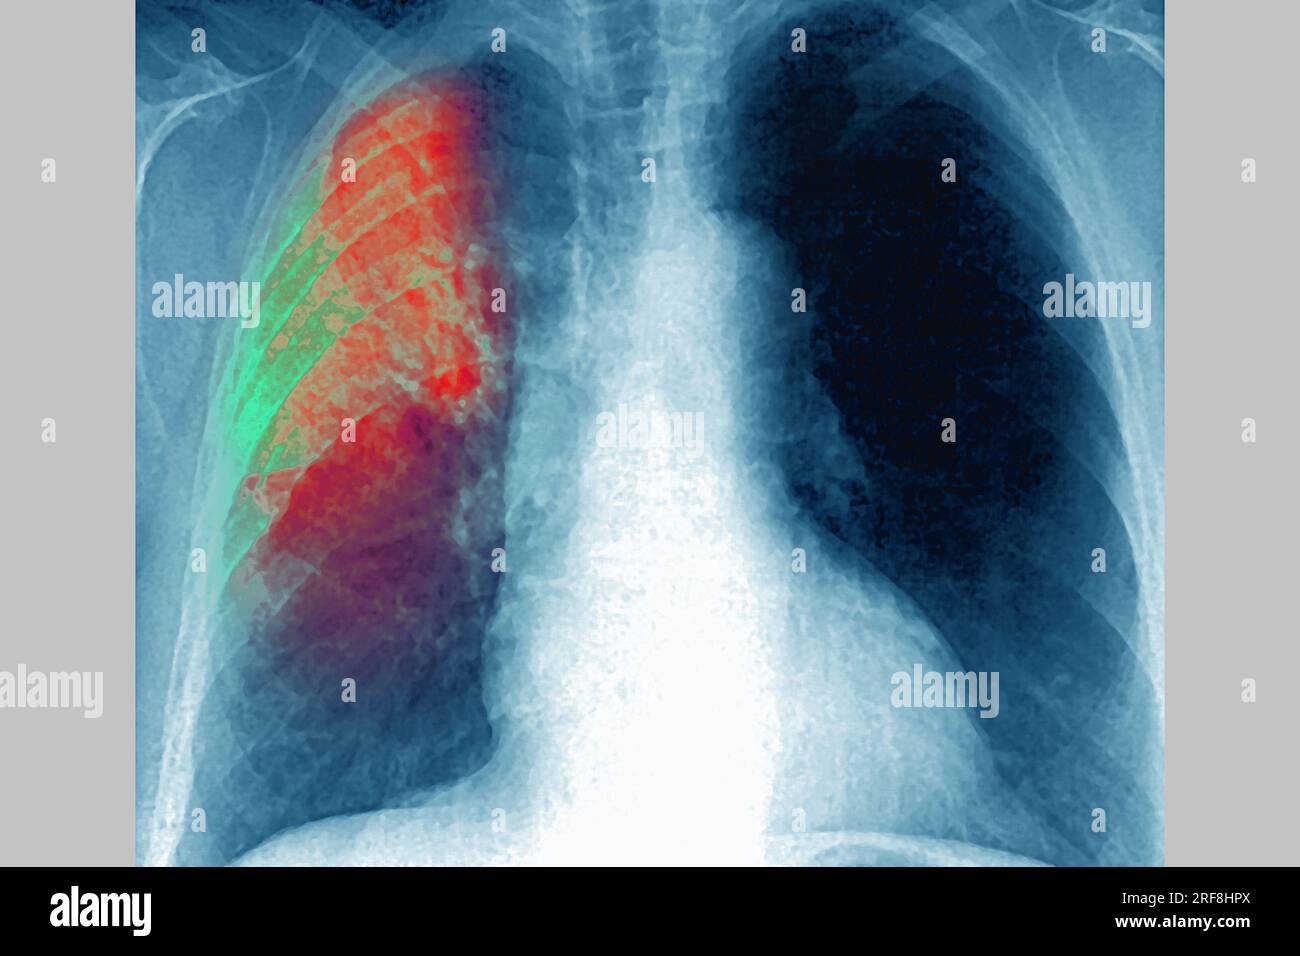 Pneumonie in der rechten Lunge (akute Atemwegsinfektion), aufgedeckt durch frontales Thoraxröntgenbild. Stockfoto